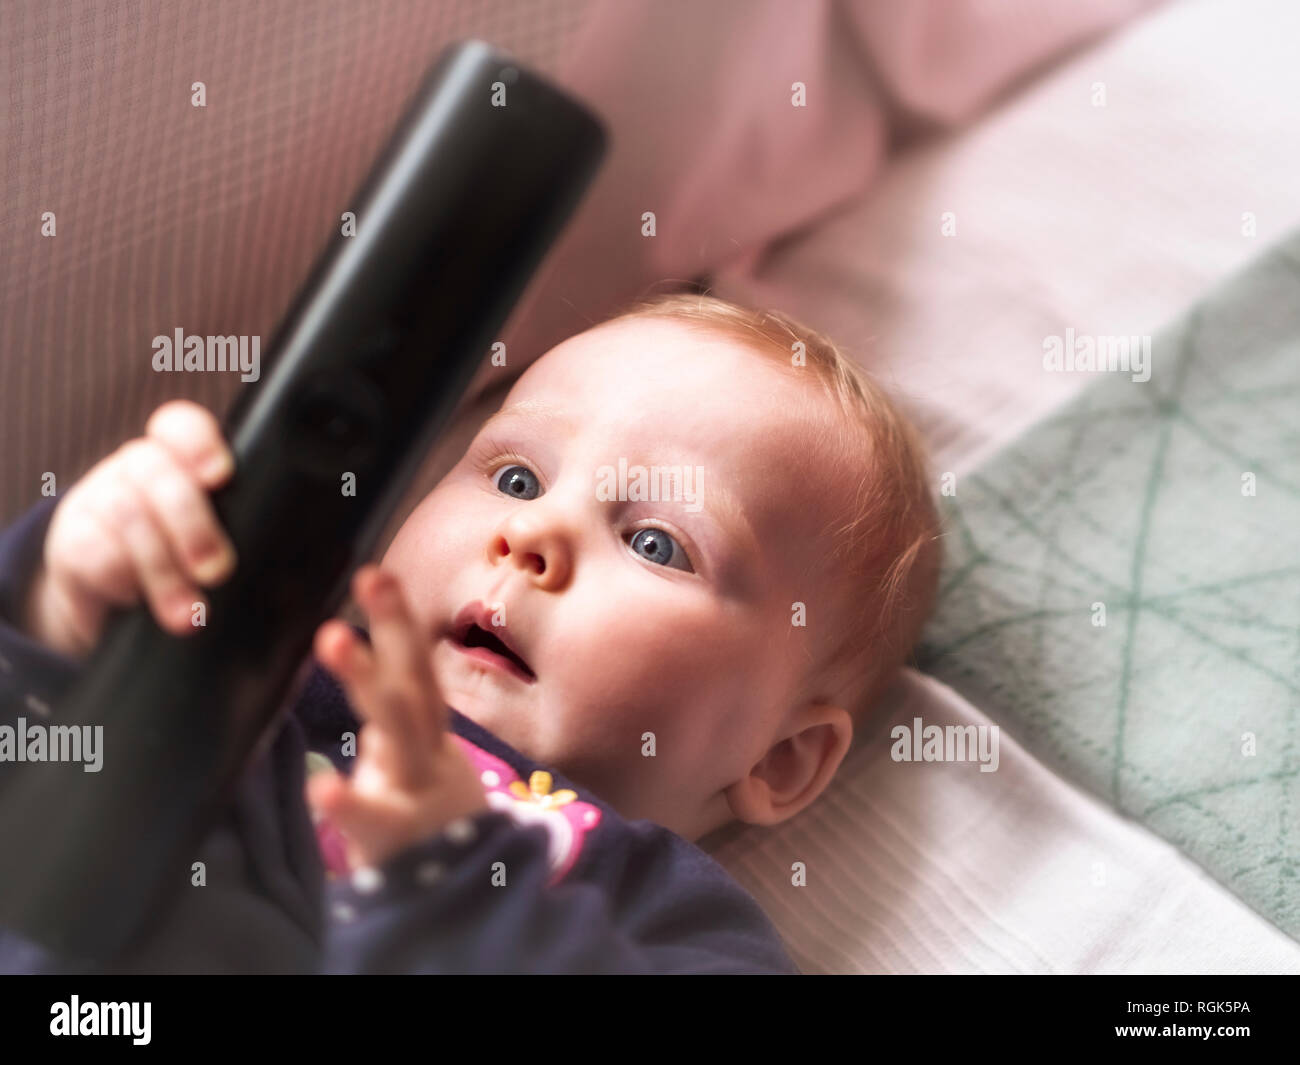 Baby Girl sosteniendo el control remoto Foto de stock